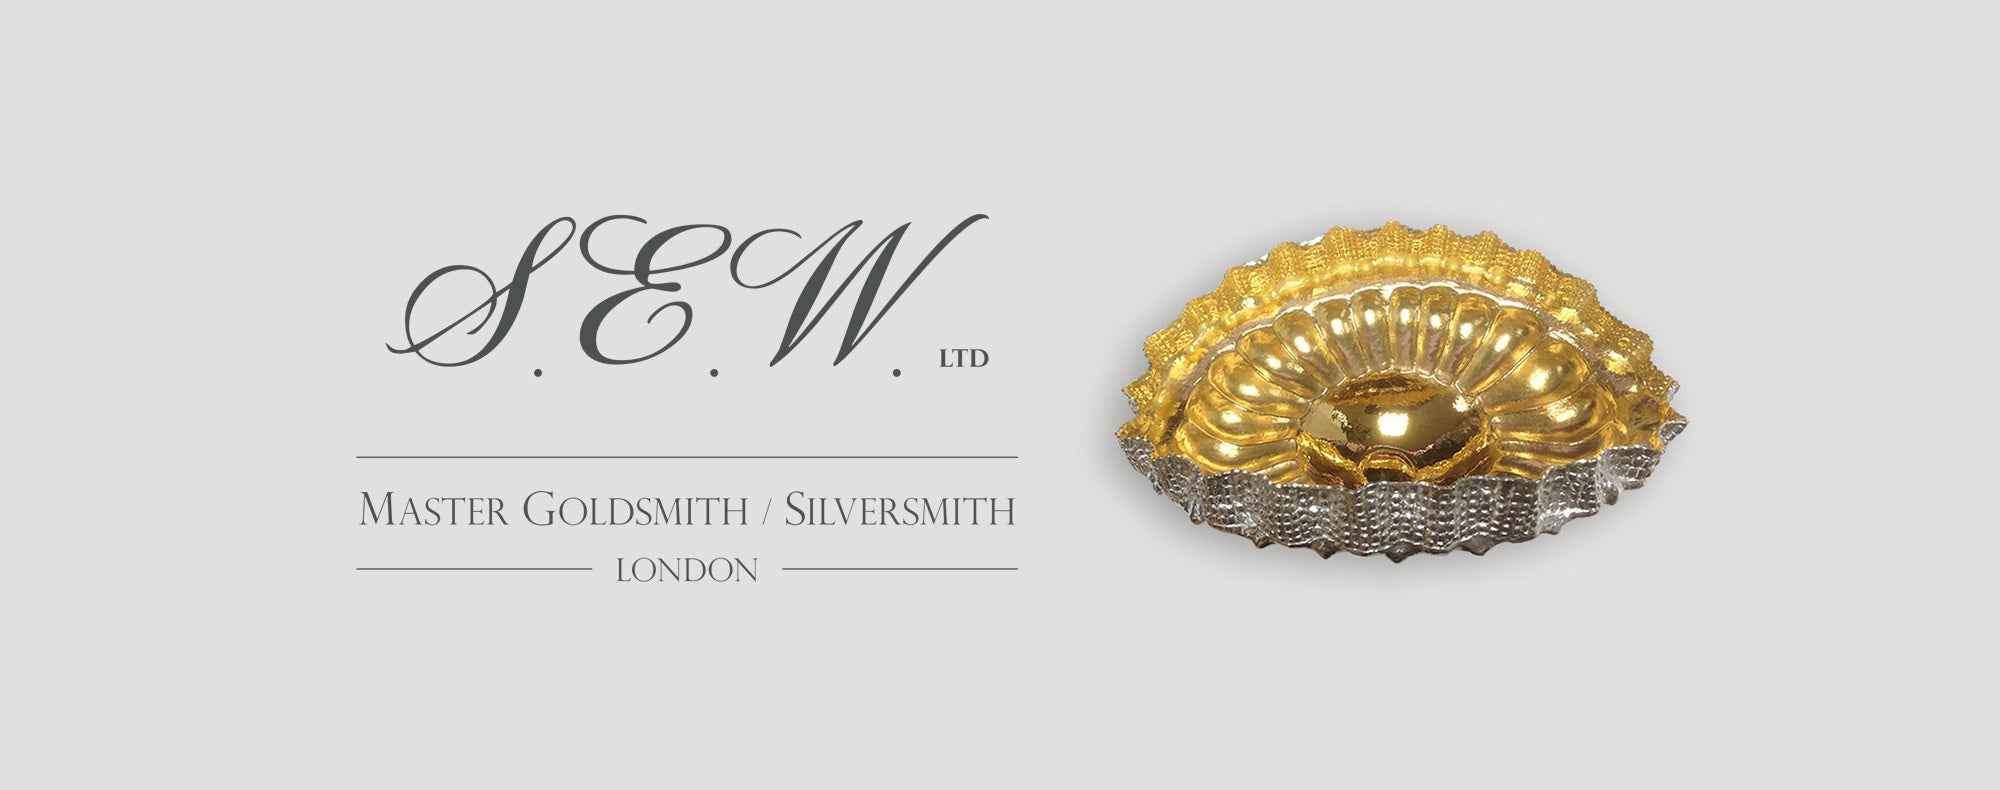 S.E.W. Ltd-Gold-Silversmith.com